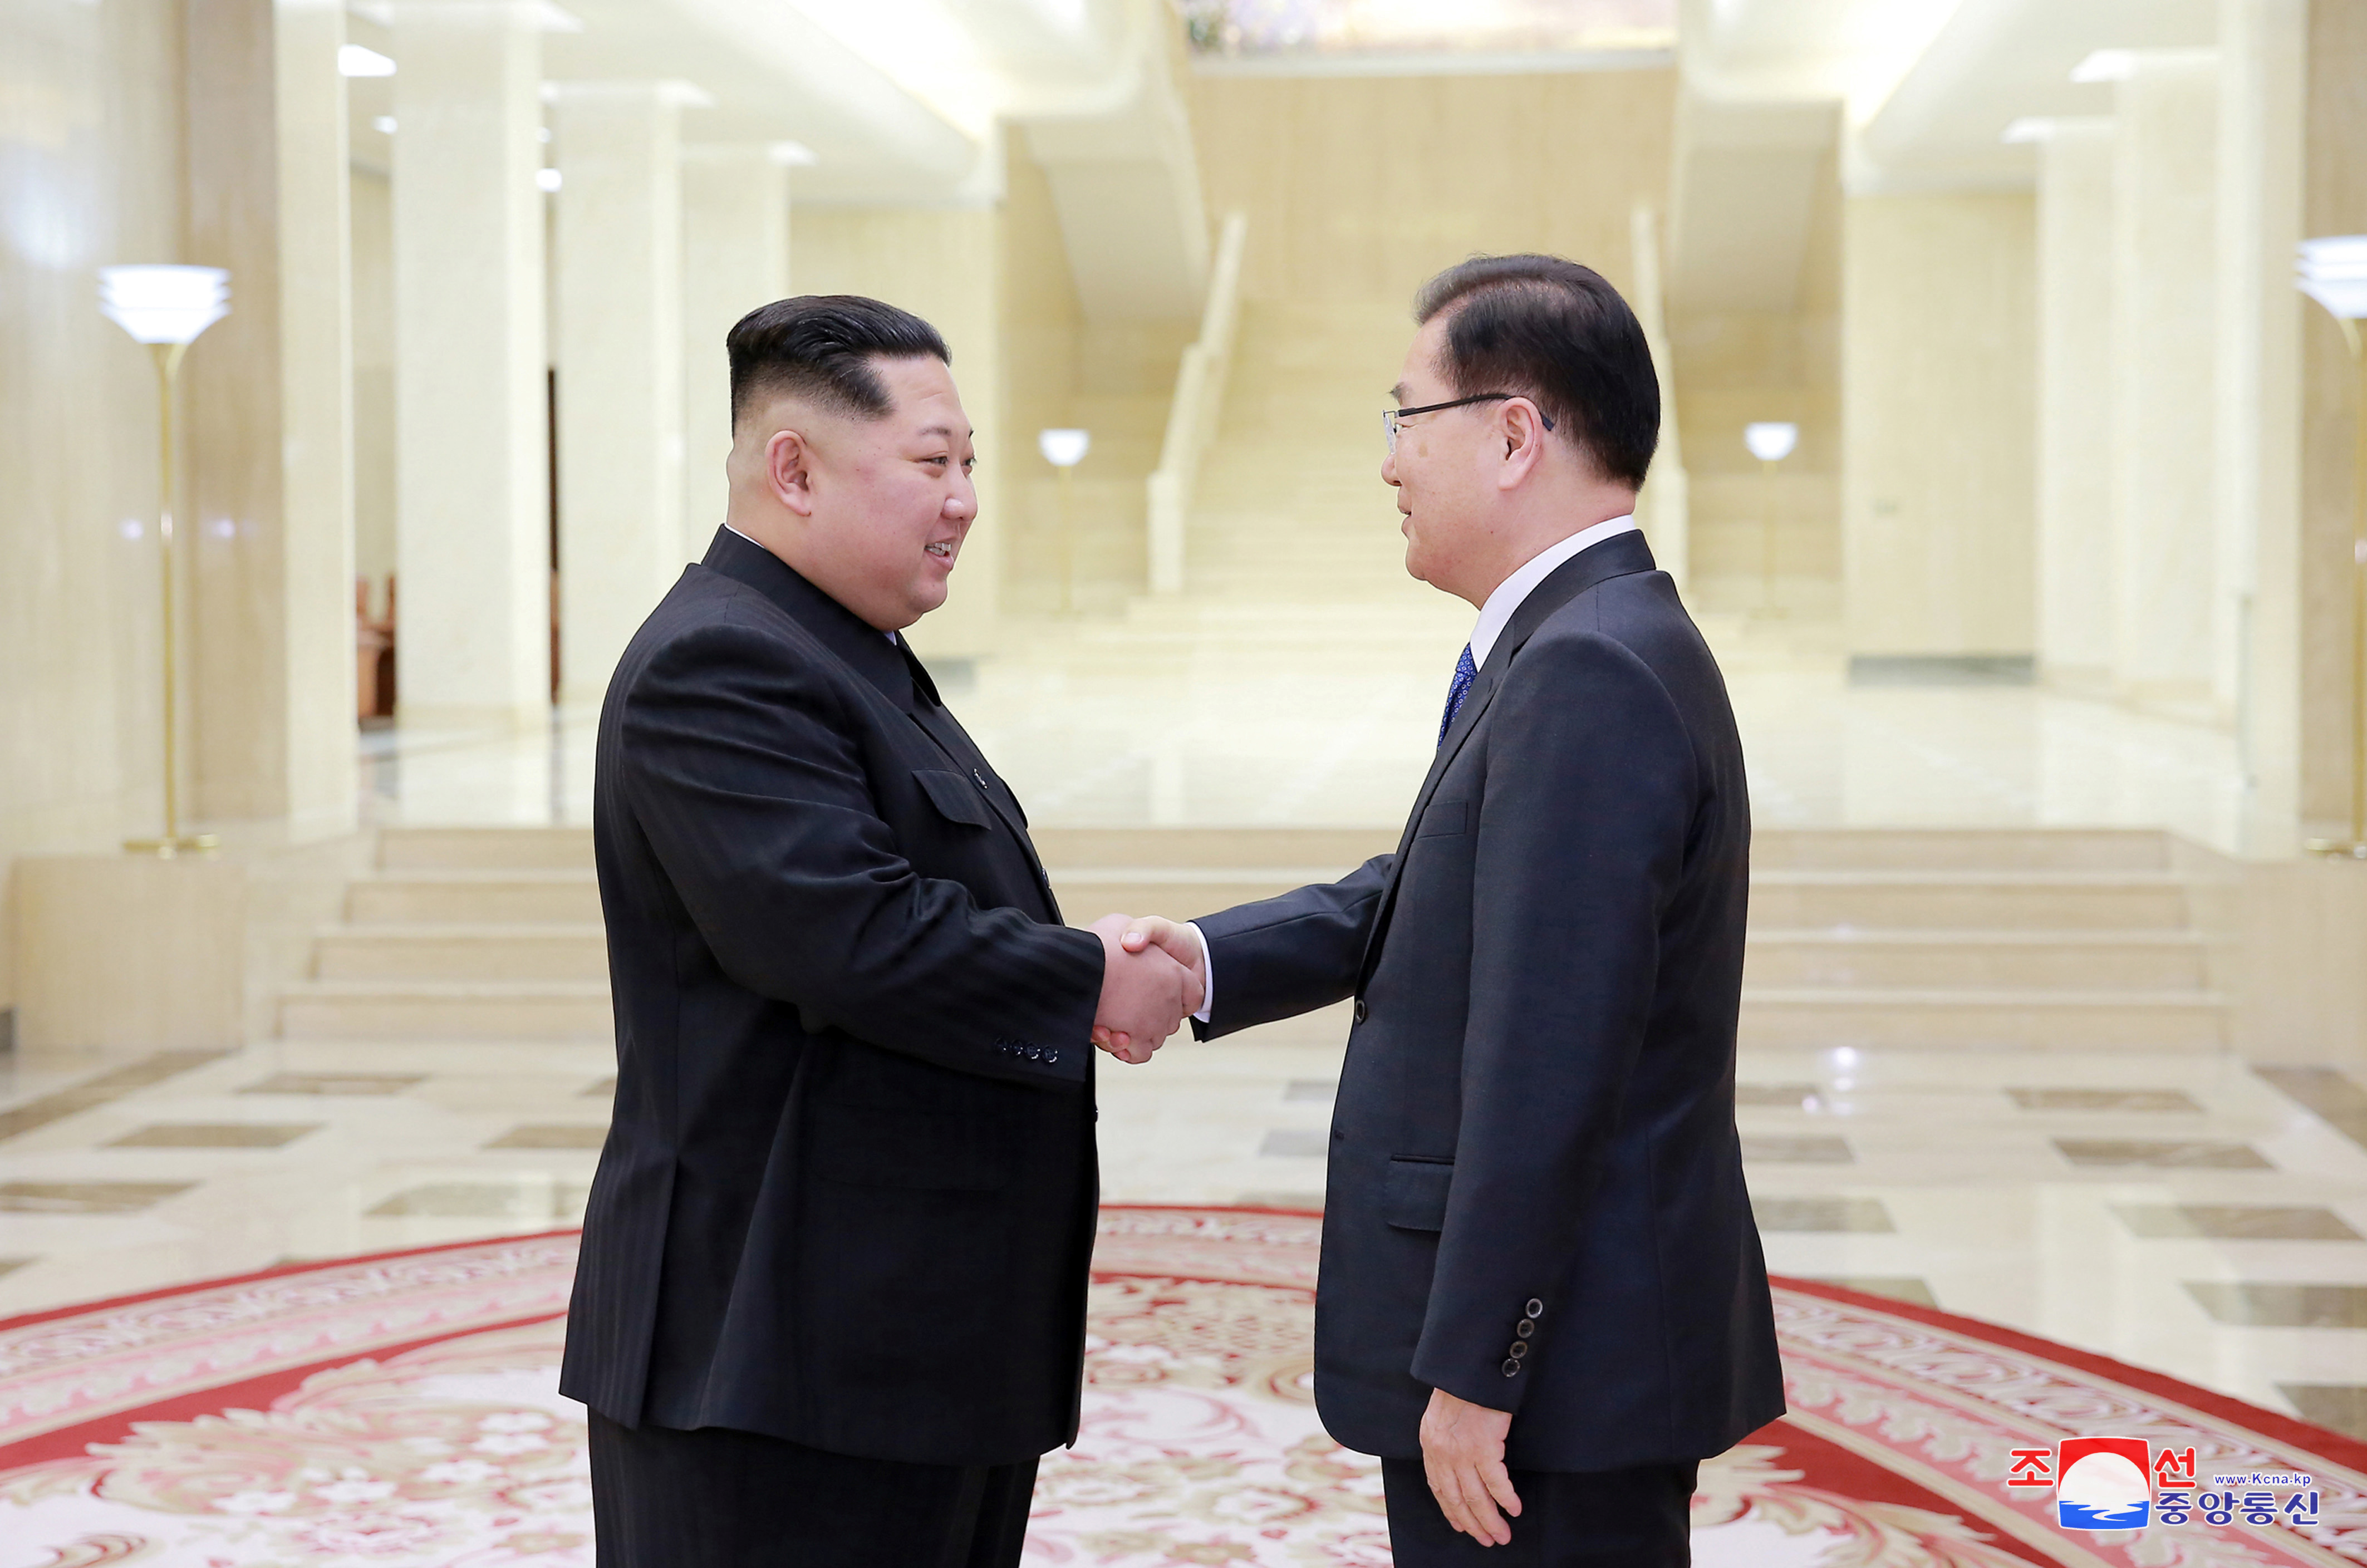 زعيم كوريا الشمالية يلتقى أحد مبعوثى وفد كوريا الجنوبية